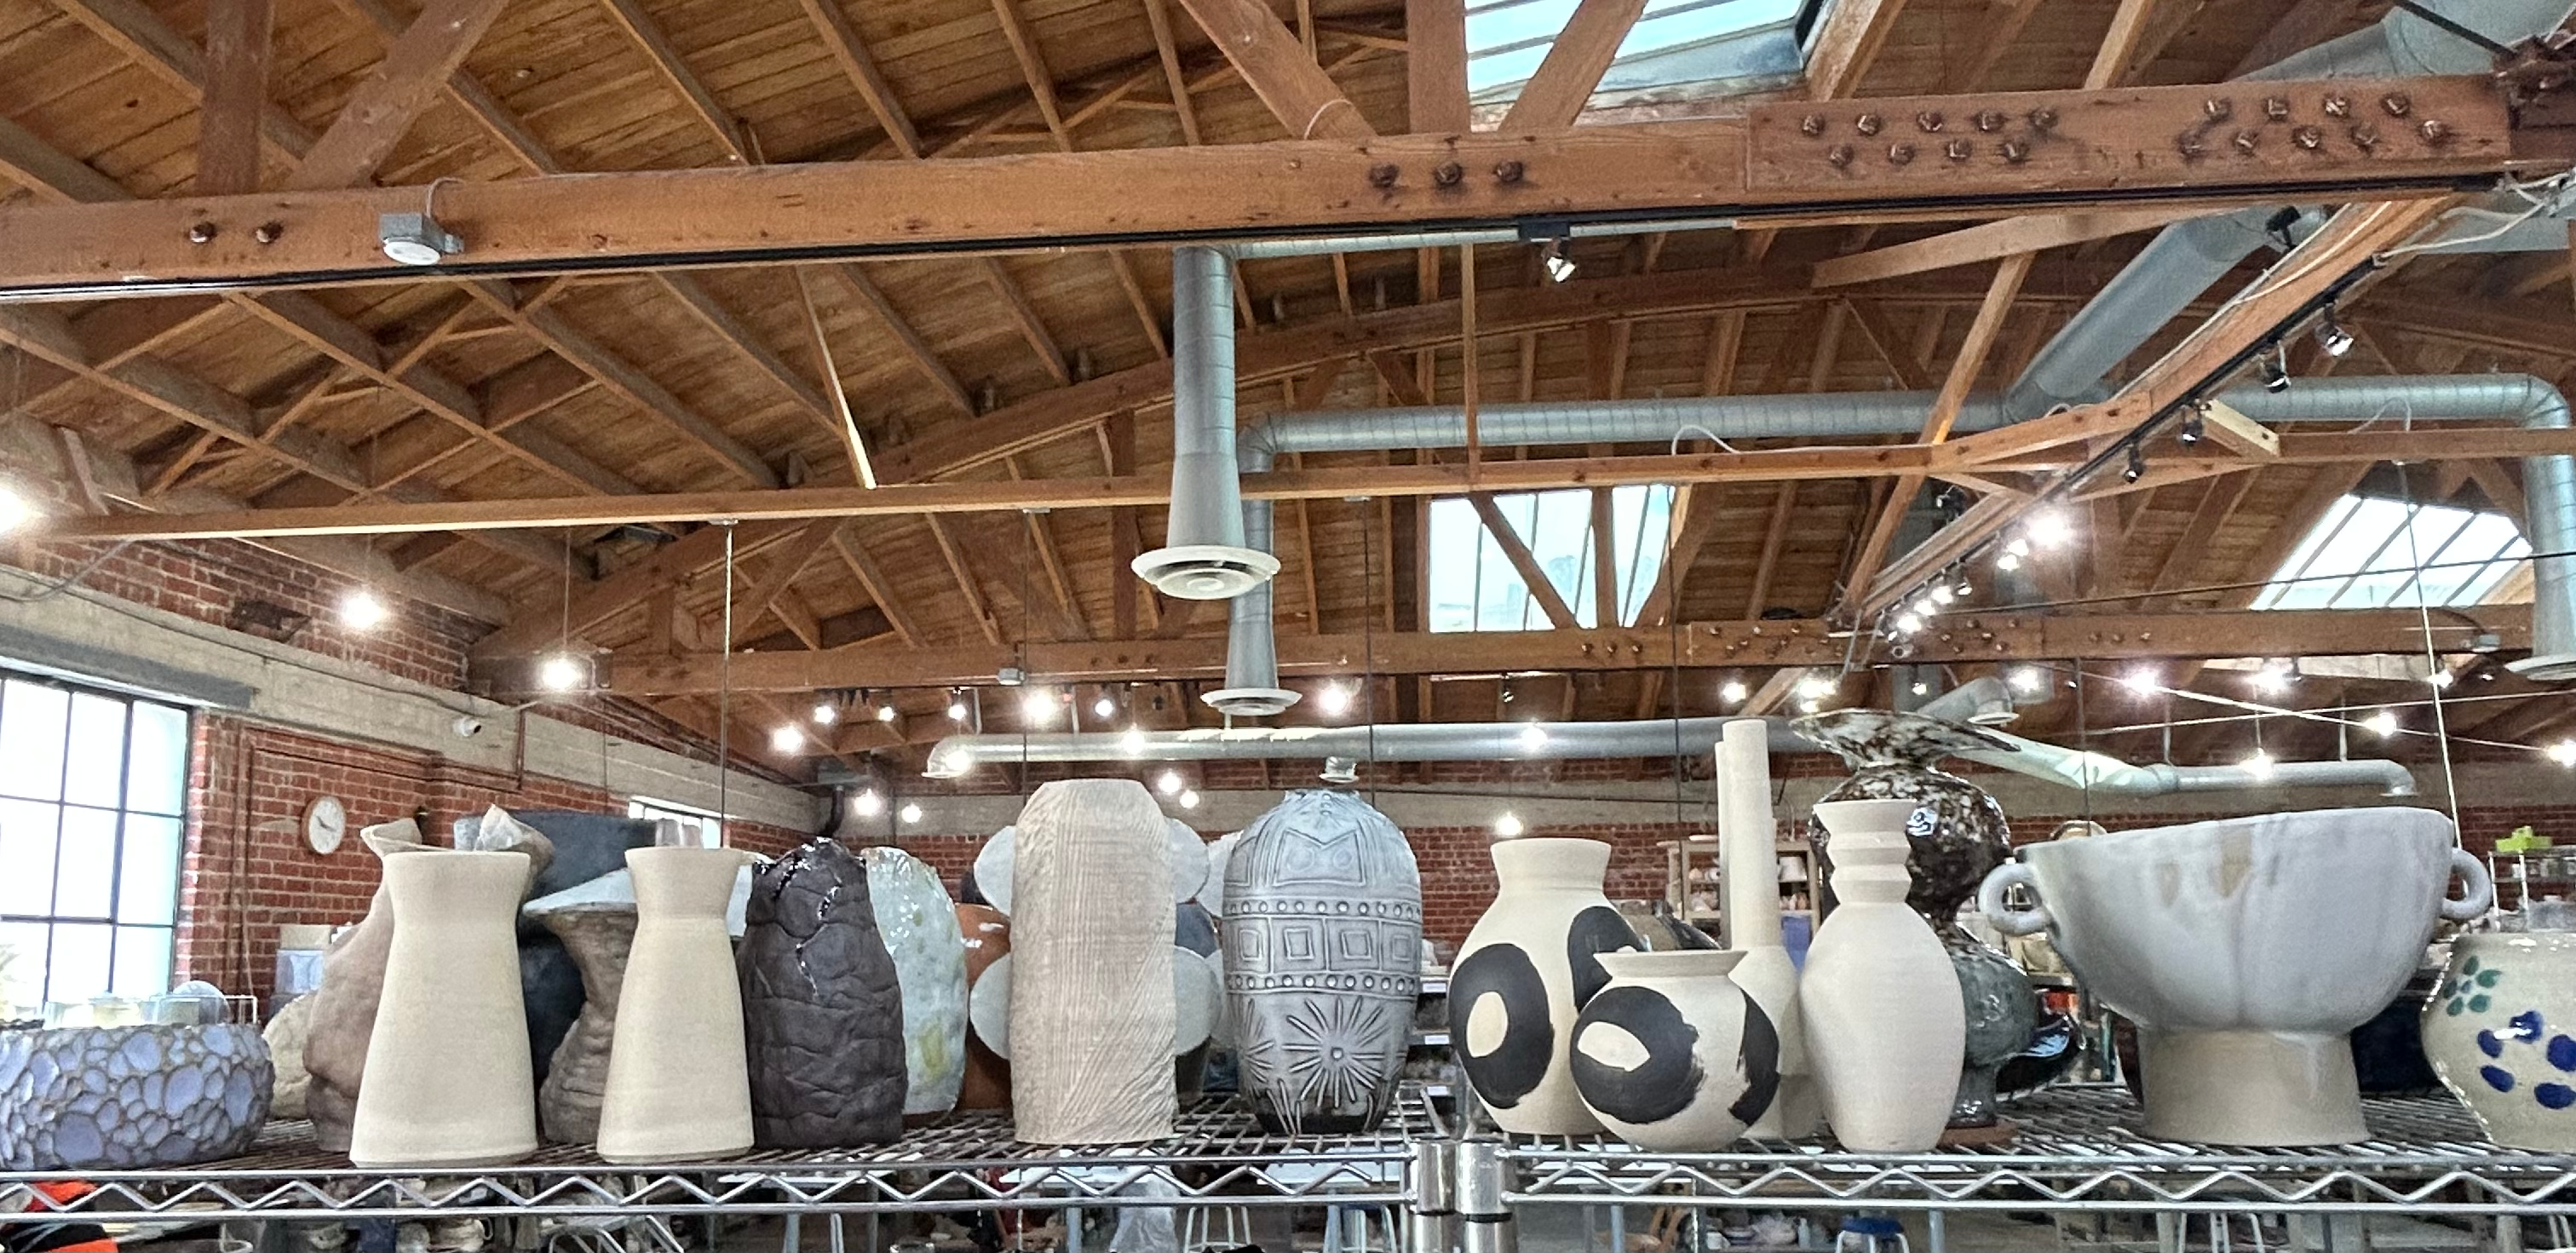 LOS ANGELES – The Pottery Studio